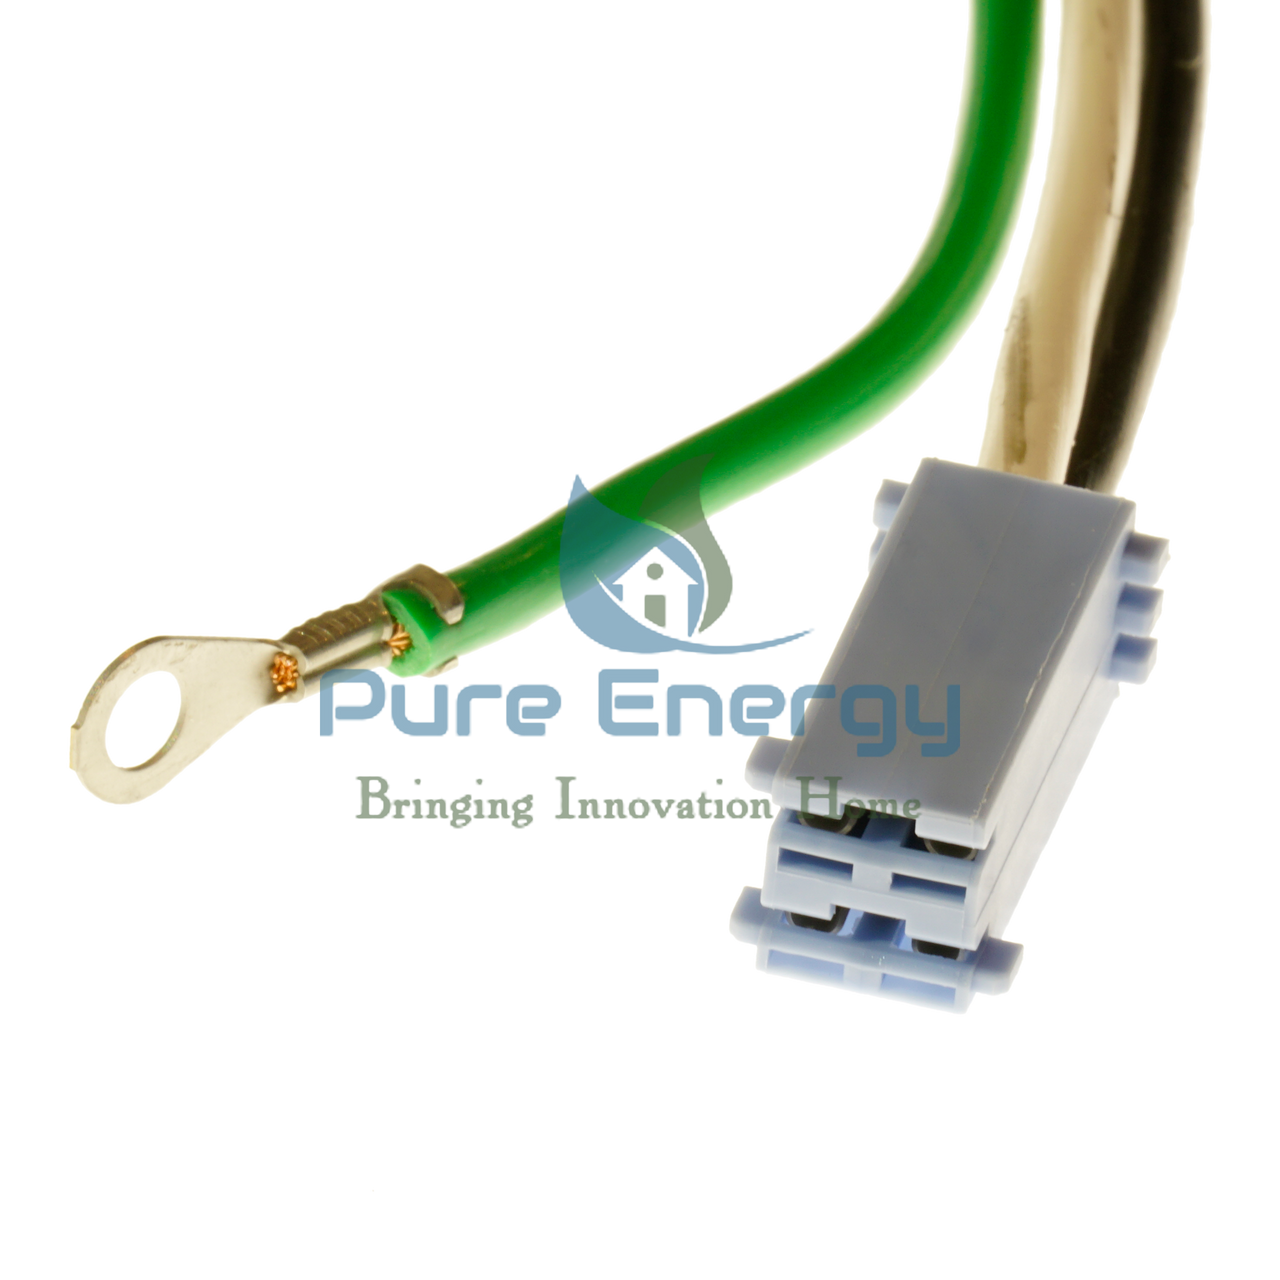 Closeup of power cord connectors